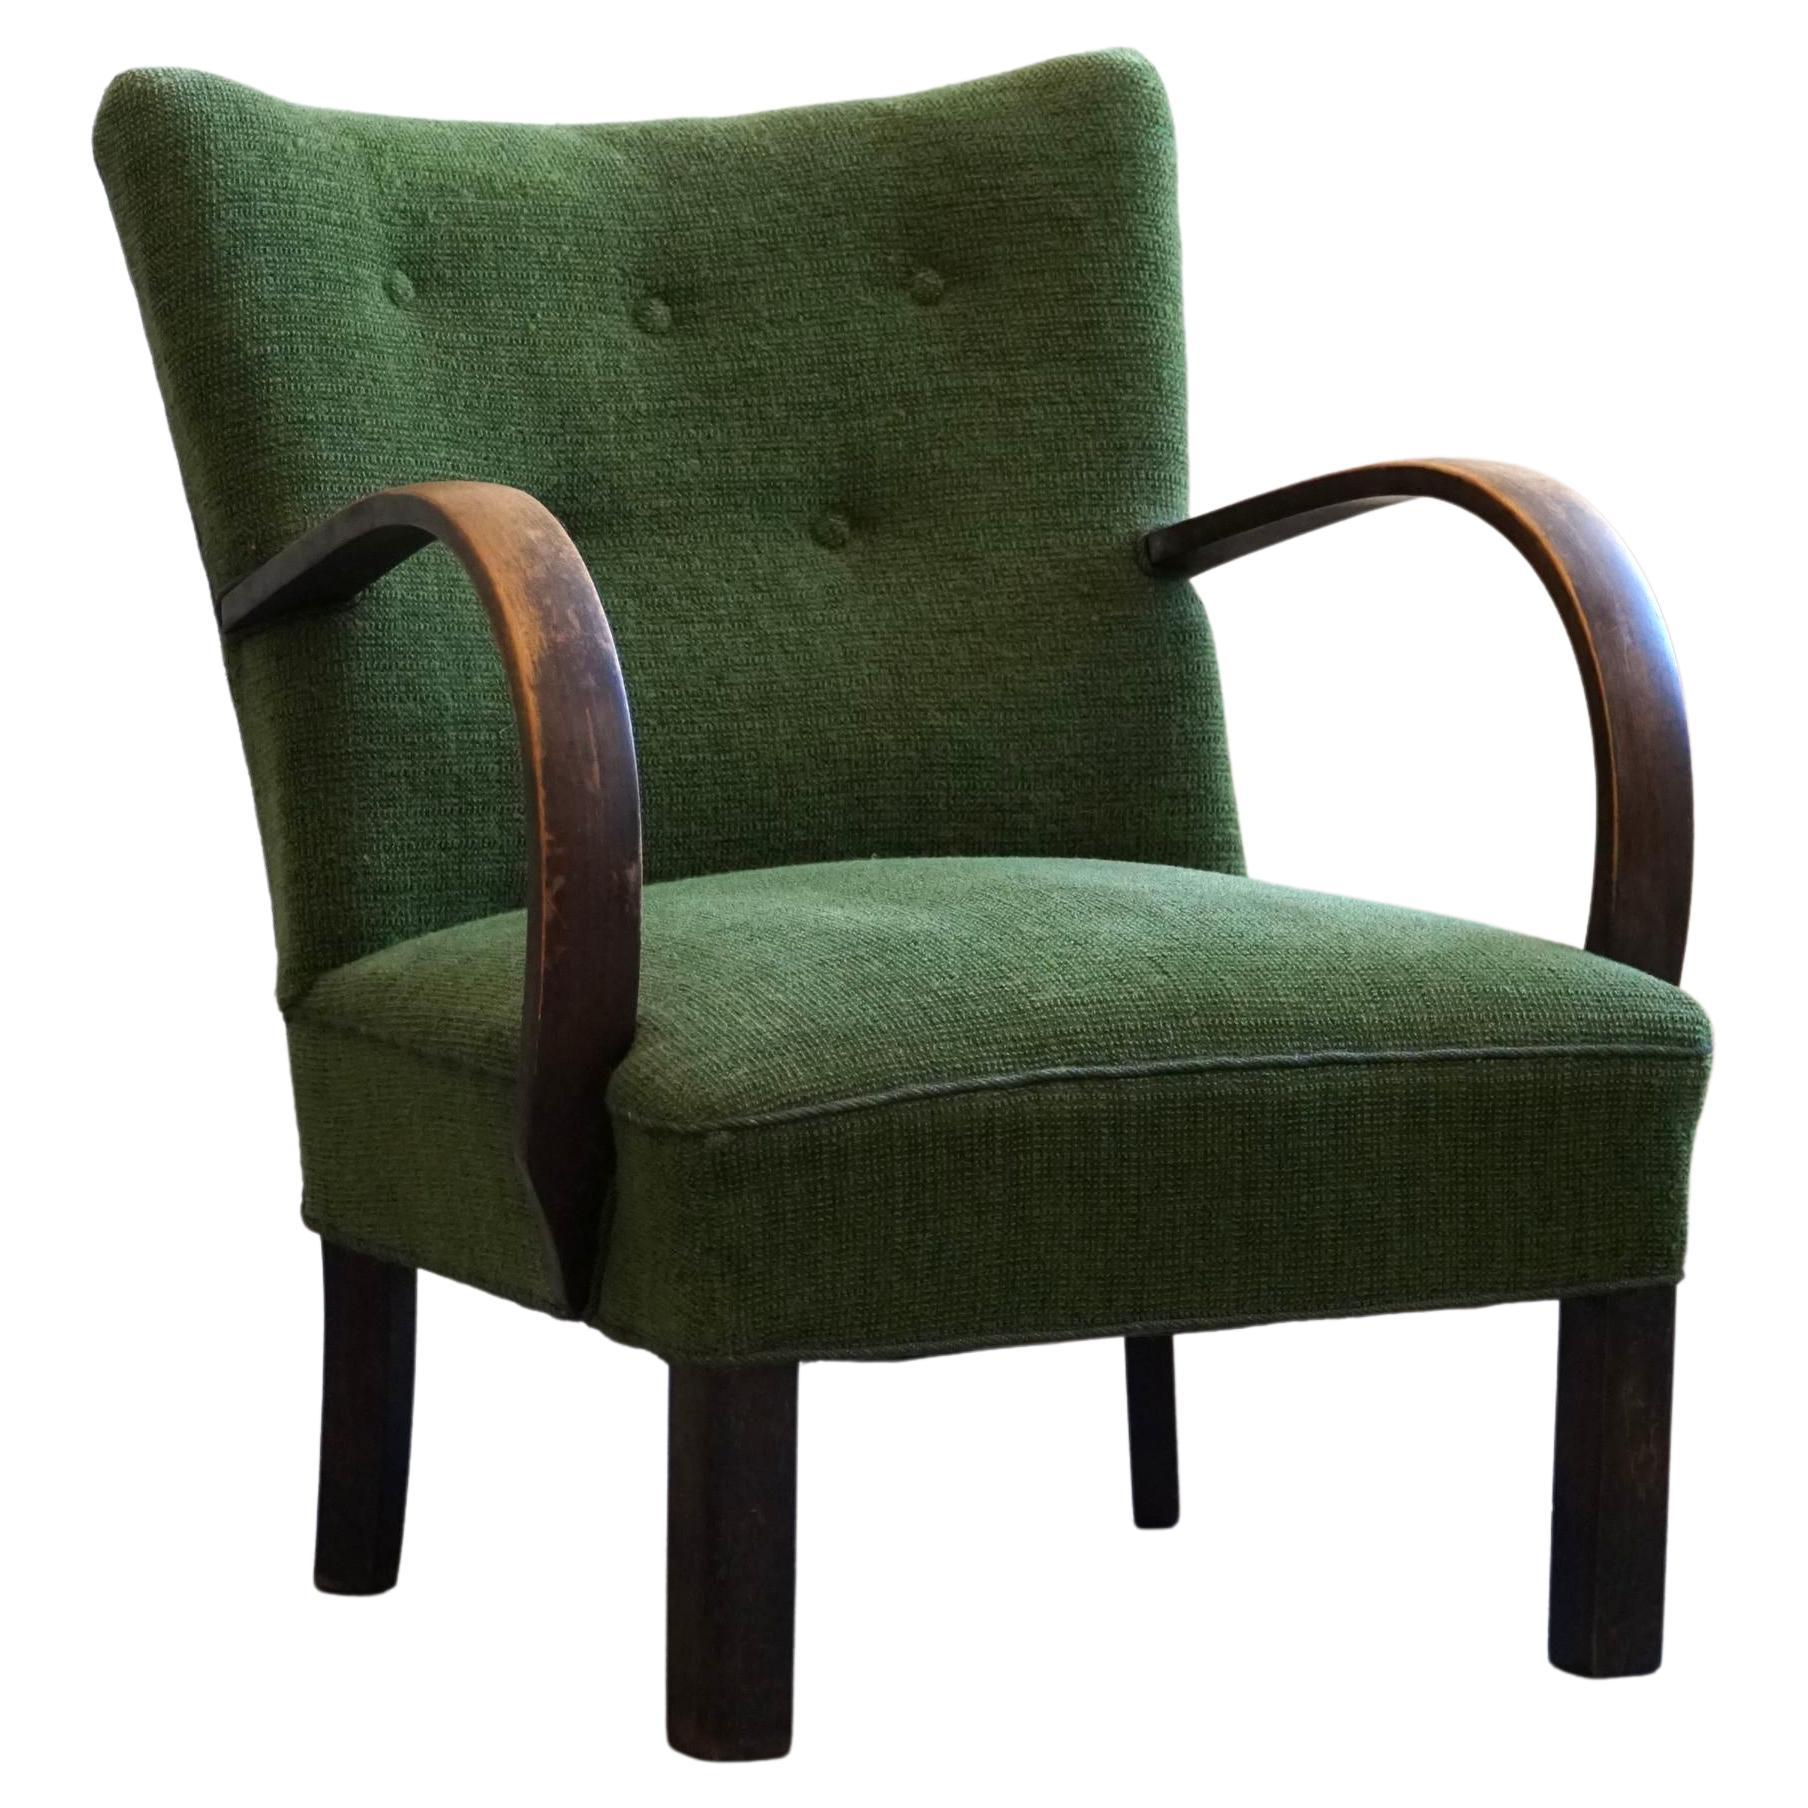 Easy Chair aus Buche und grünem Stoff, dänischer Schreiner, Mid-Century Modern, 1940